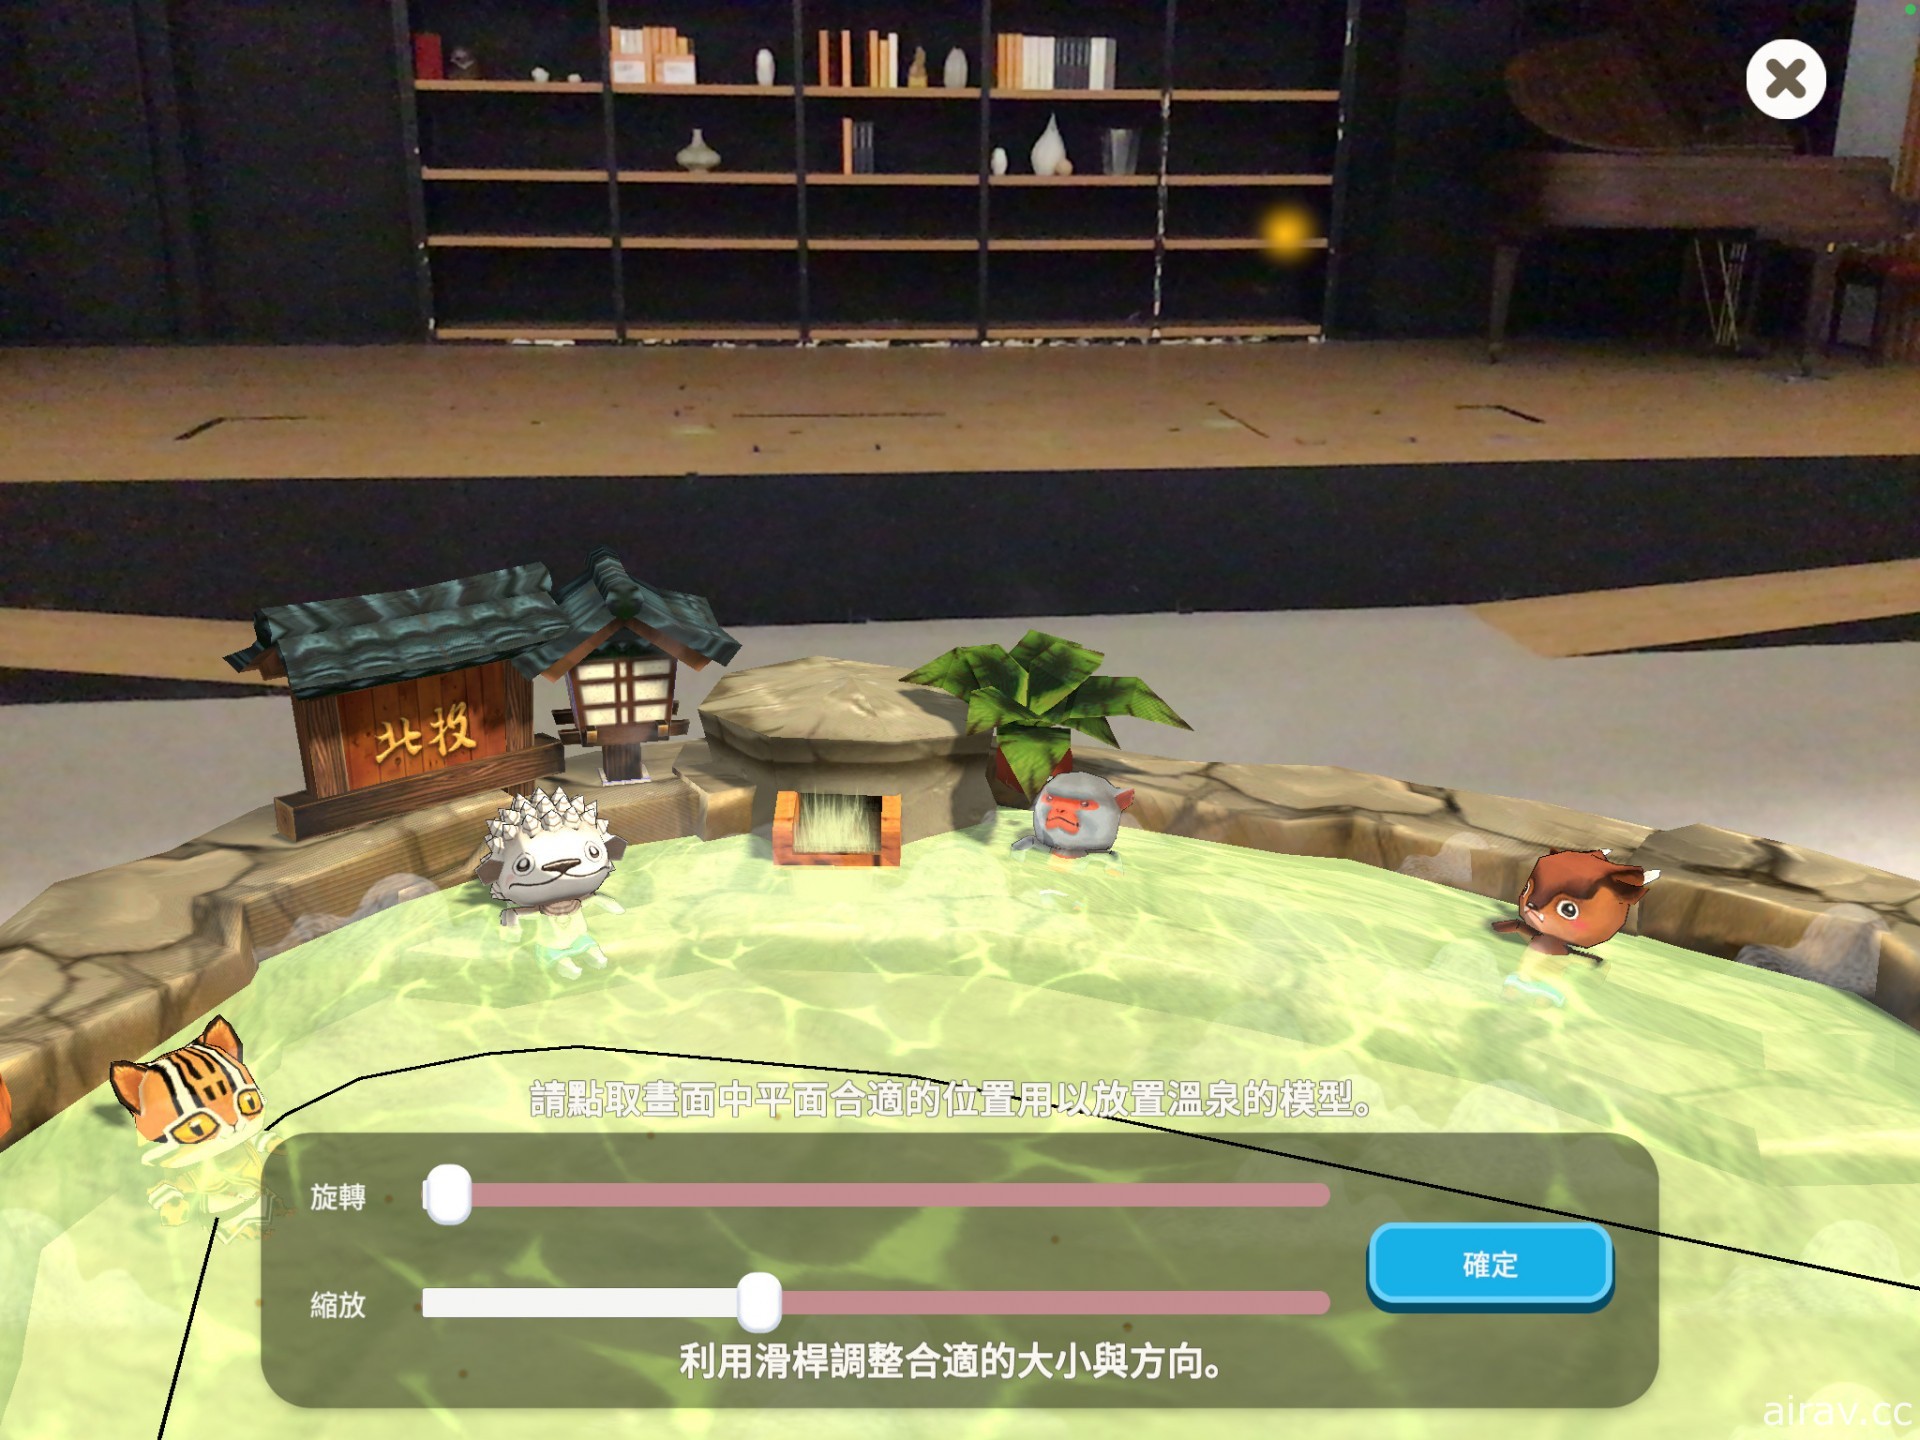 温泉主题放置经营游戏《映泉乡》开放下载 融入多项台湾特色文化